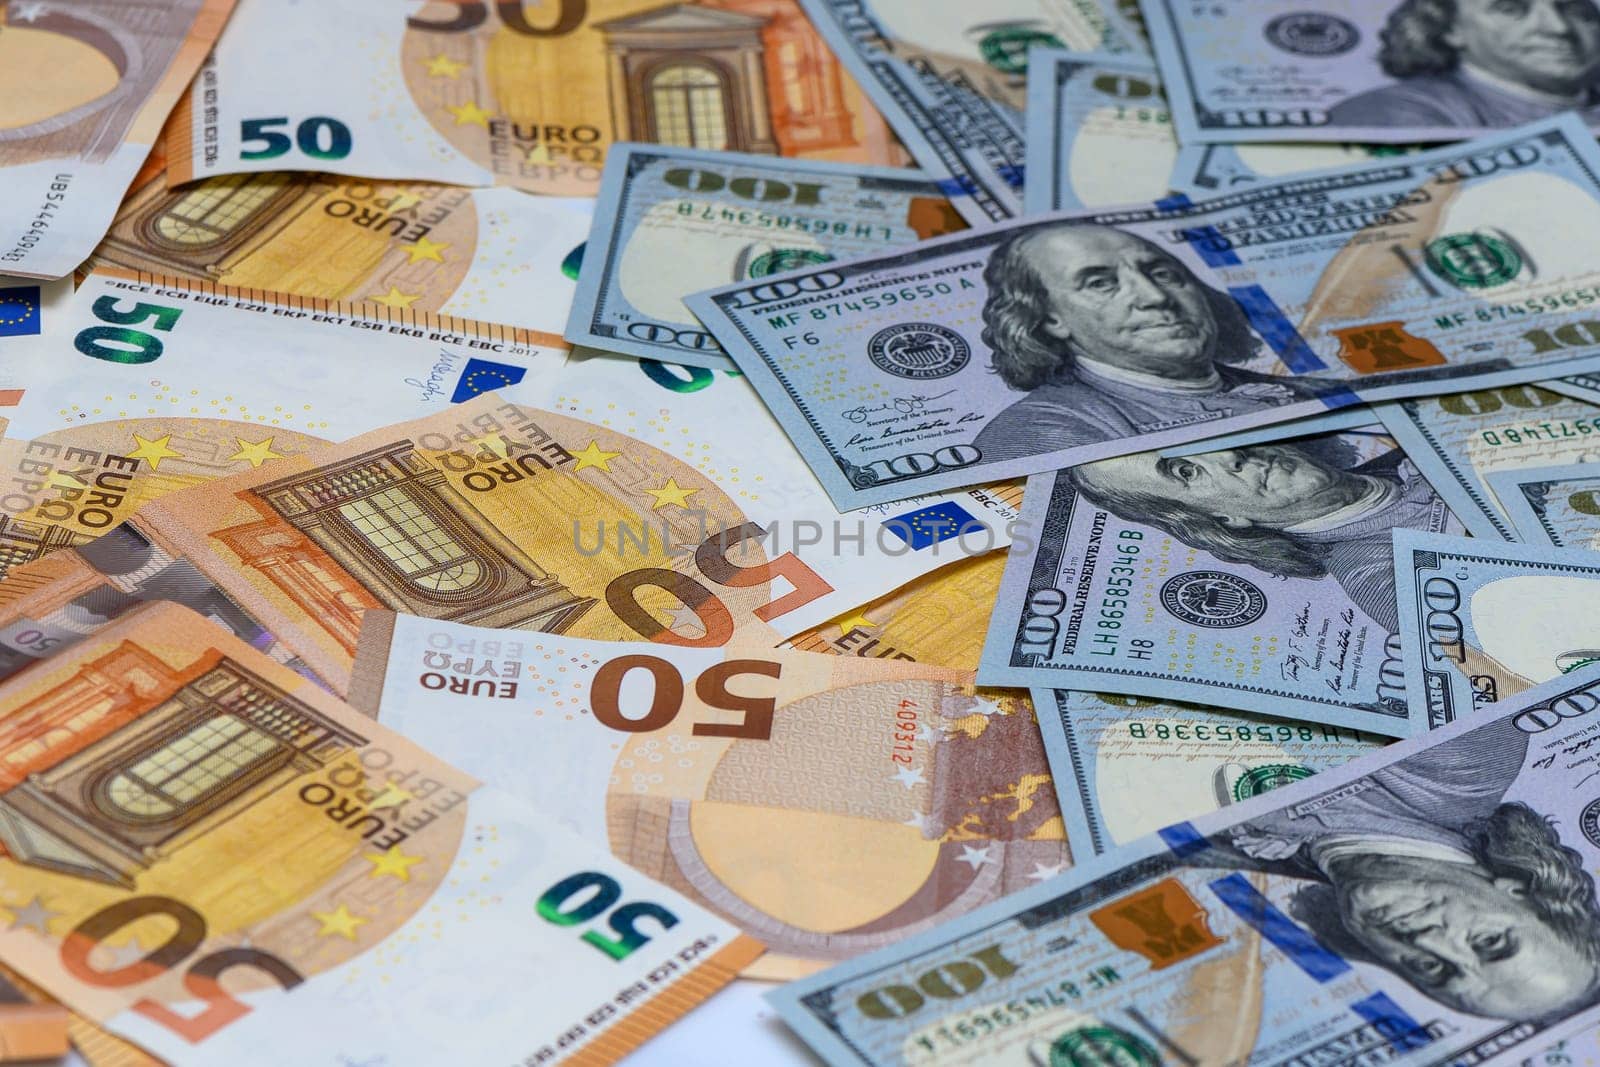 Euro and dollars banknotes. 50 Euro and 100 Dollar banknotes.